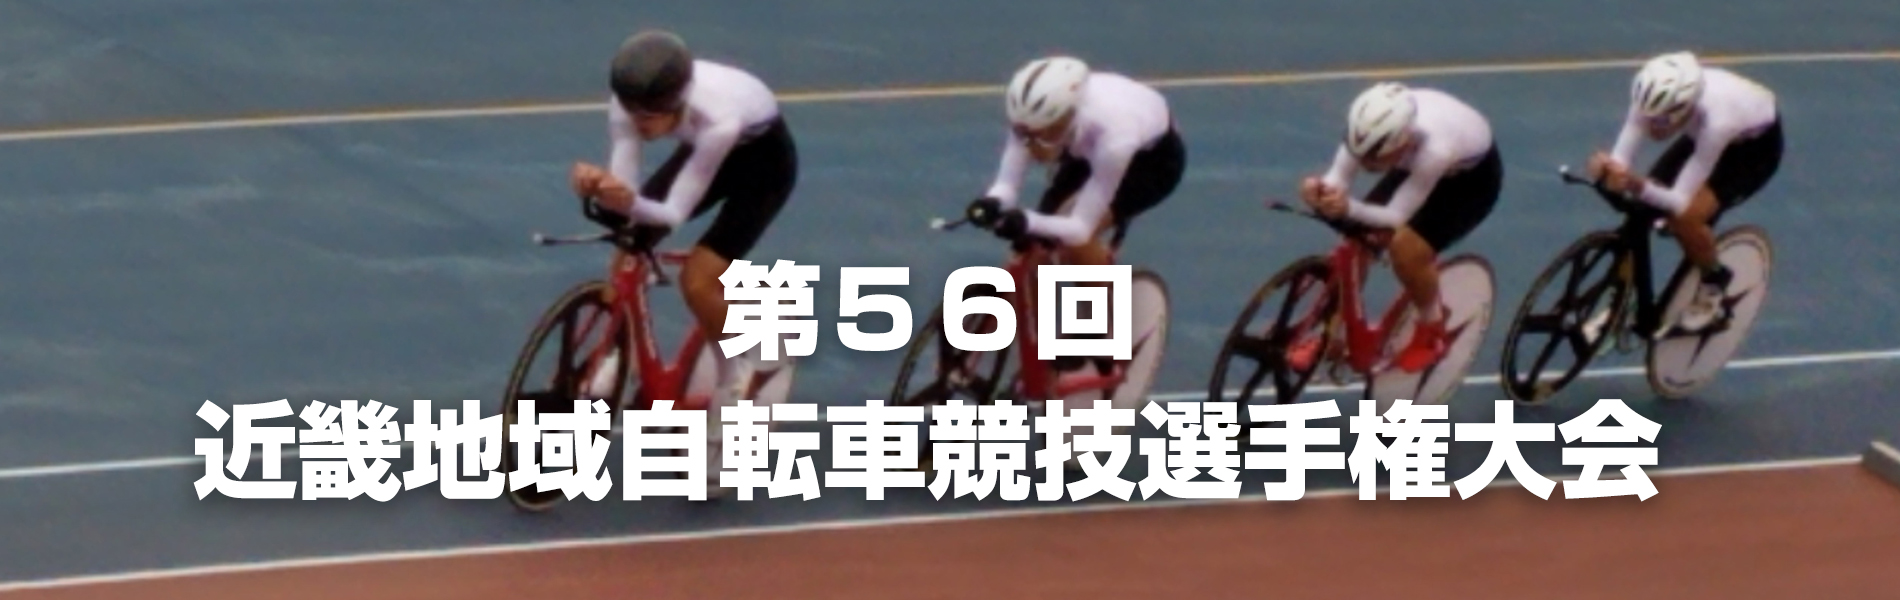 第56回近畿地域自転車競技選手権大会